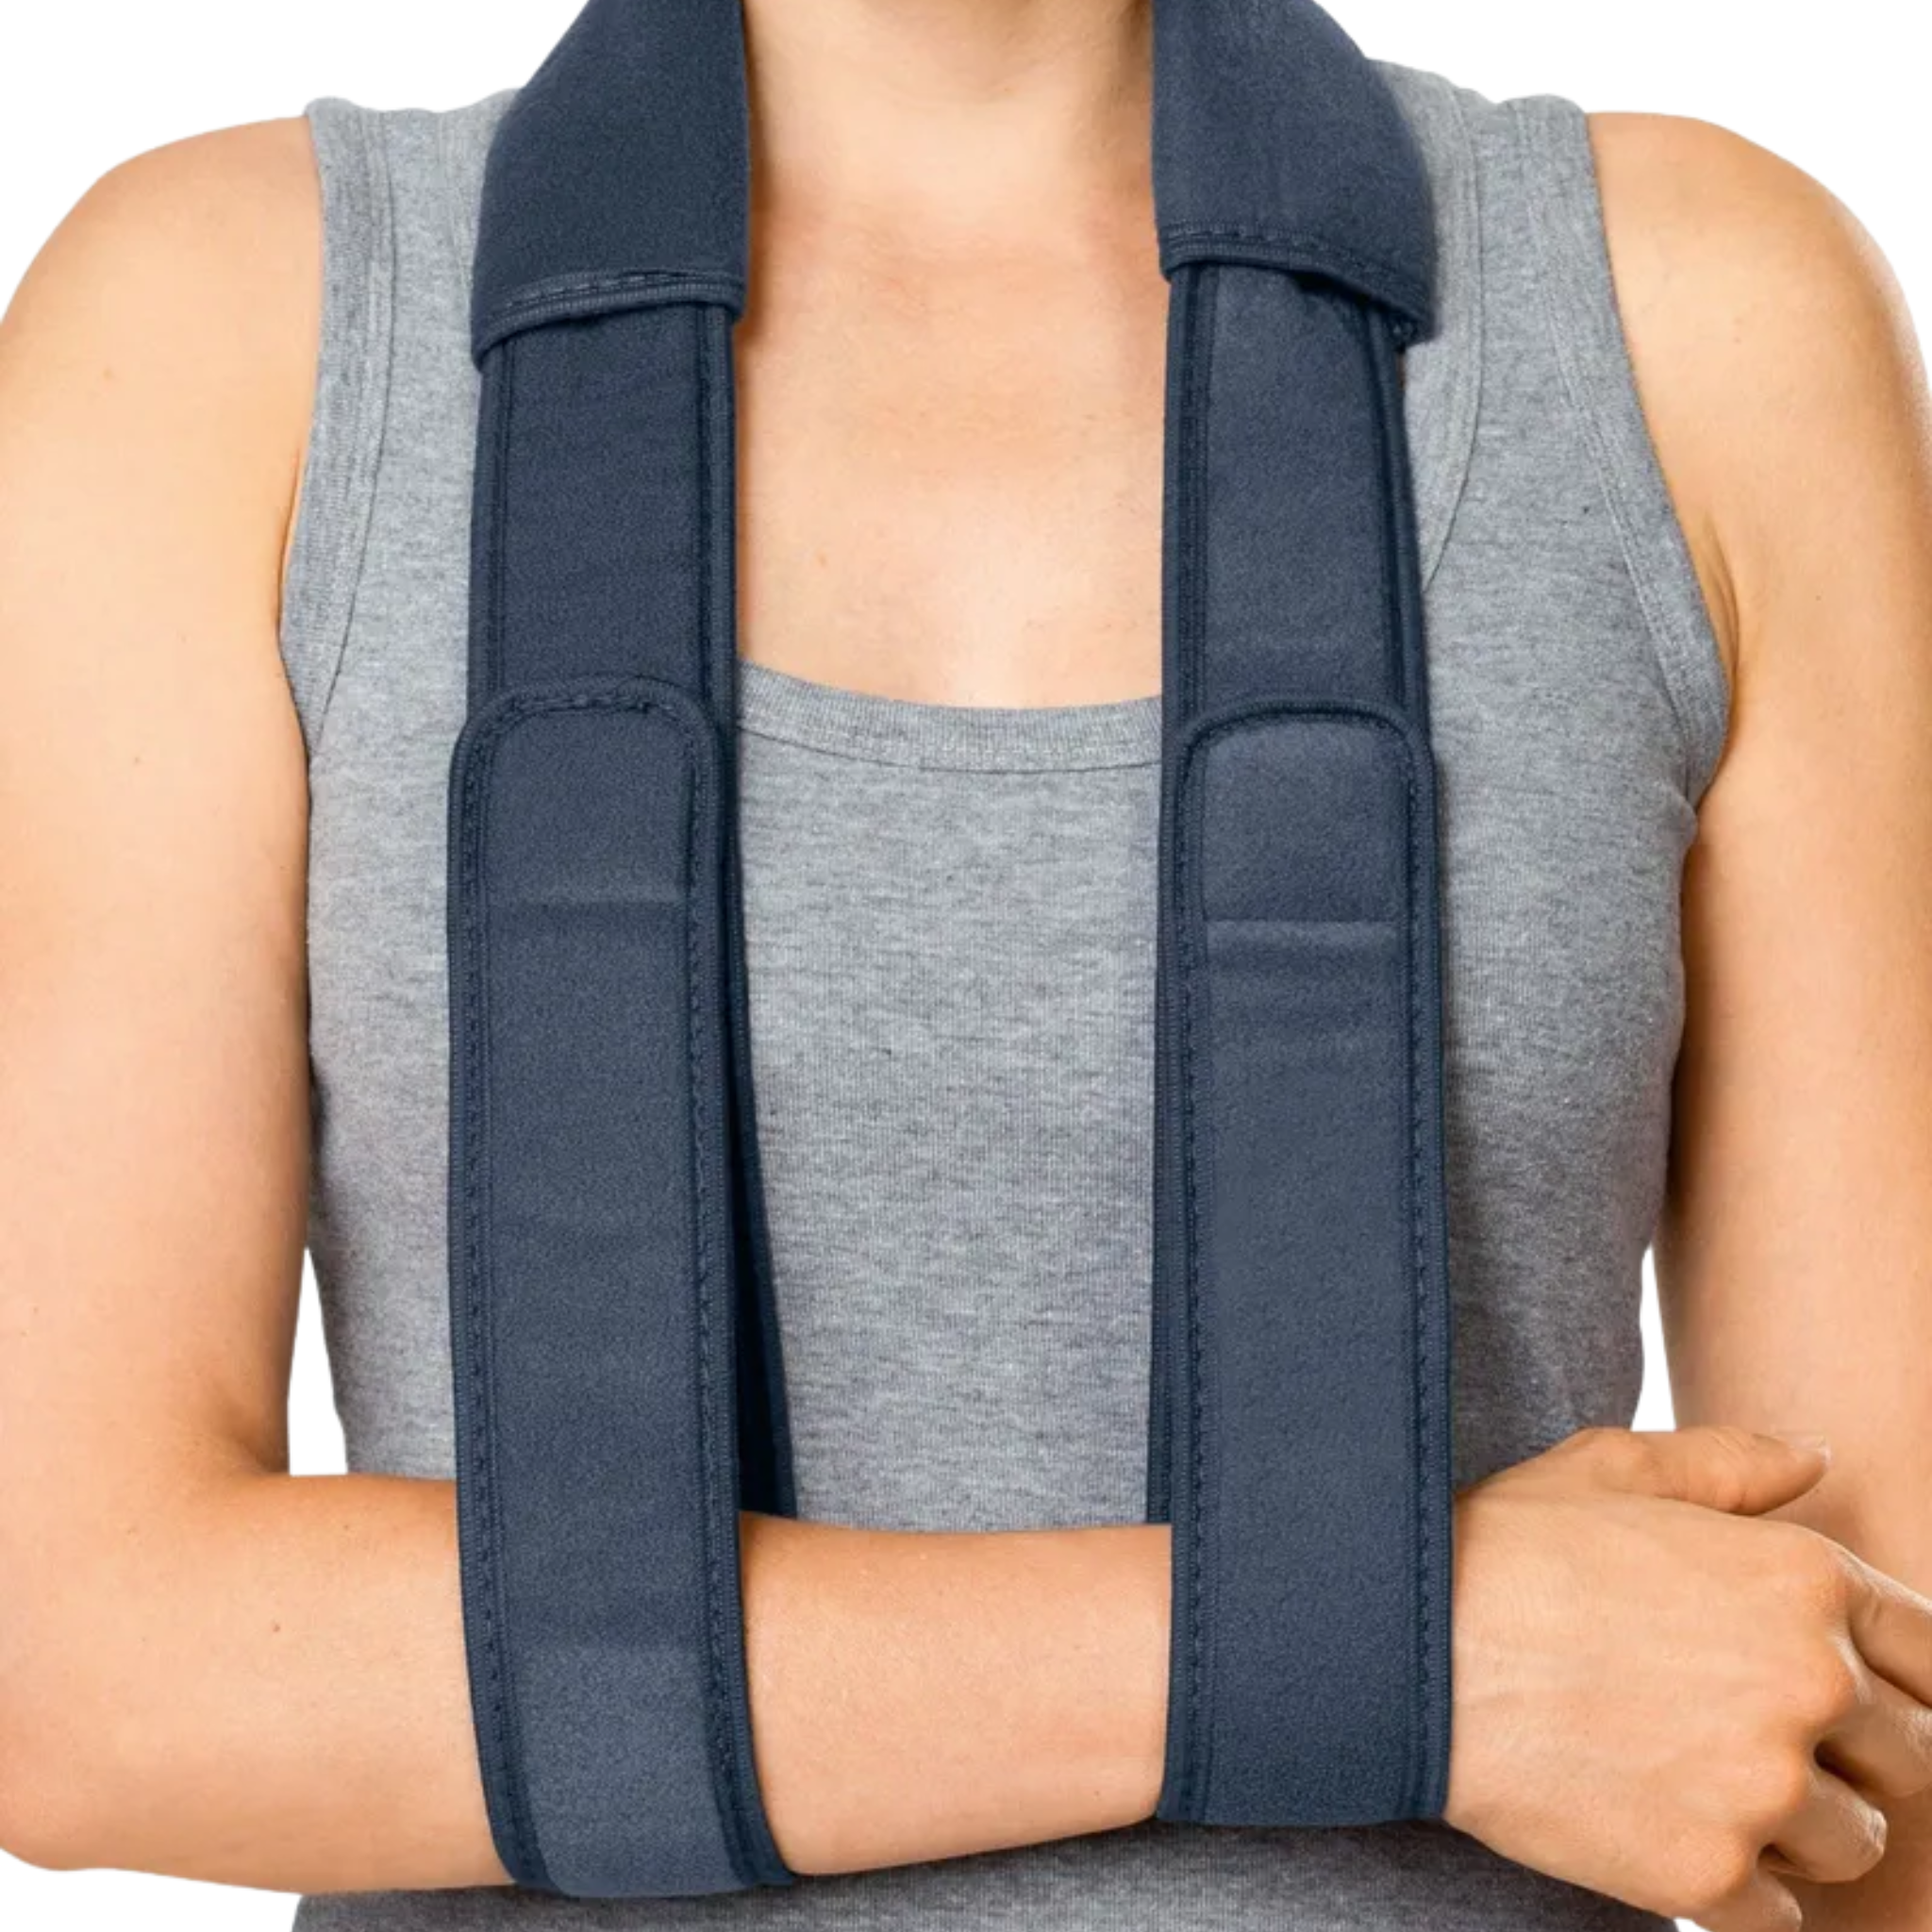 Shoulder Orthosis Immobilisation | medi Easy sling